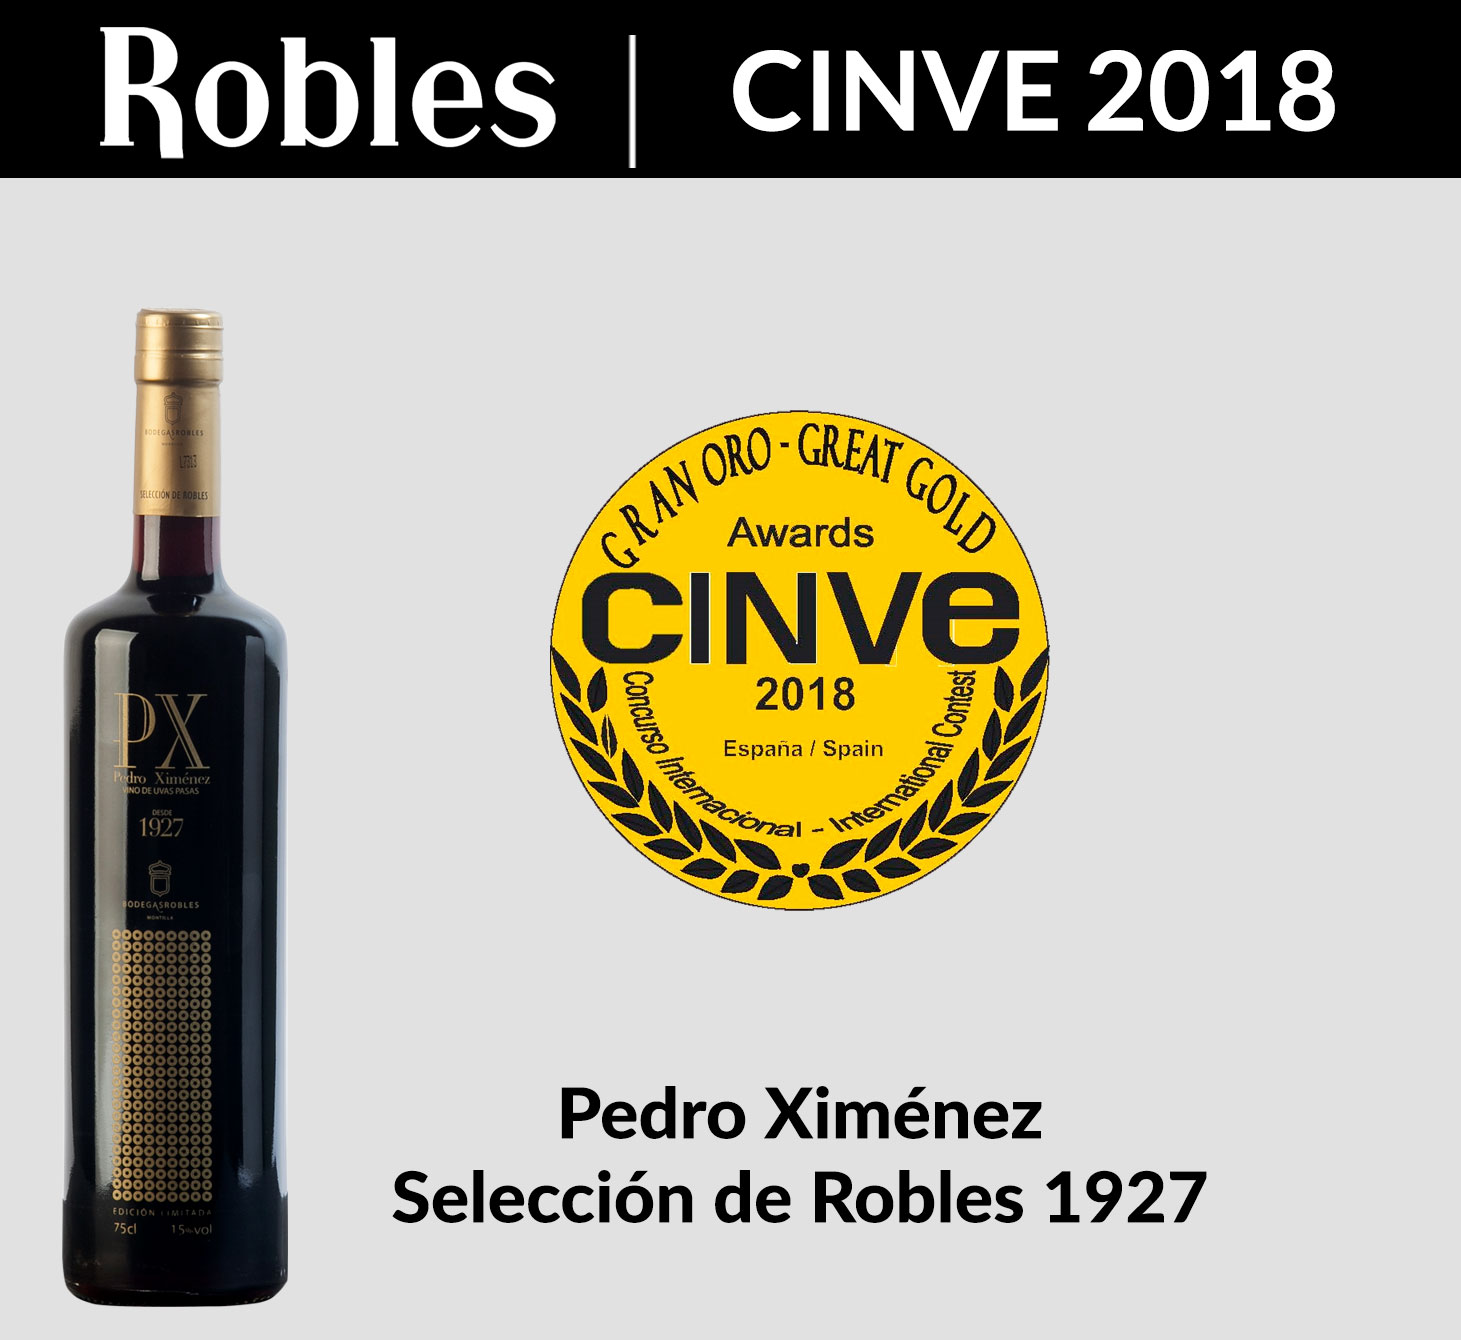 Grand Gold at CINVE 2018 for Pedro Ximénez Selección de Robles 1927.